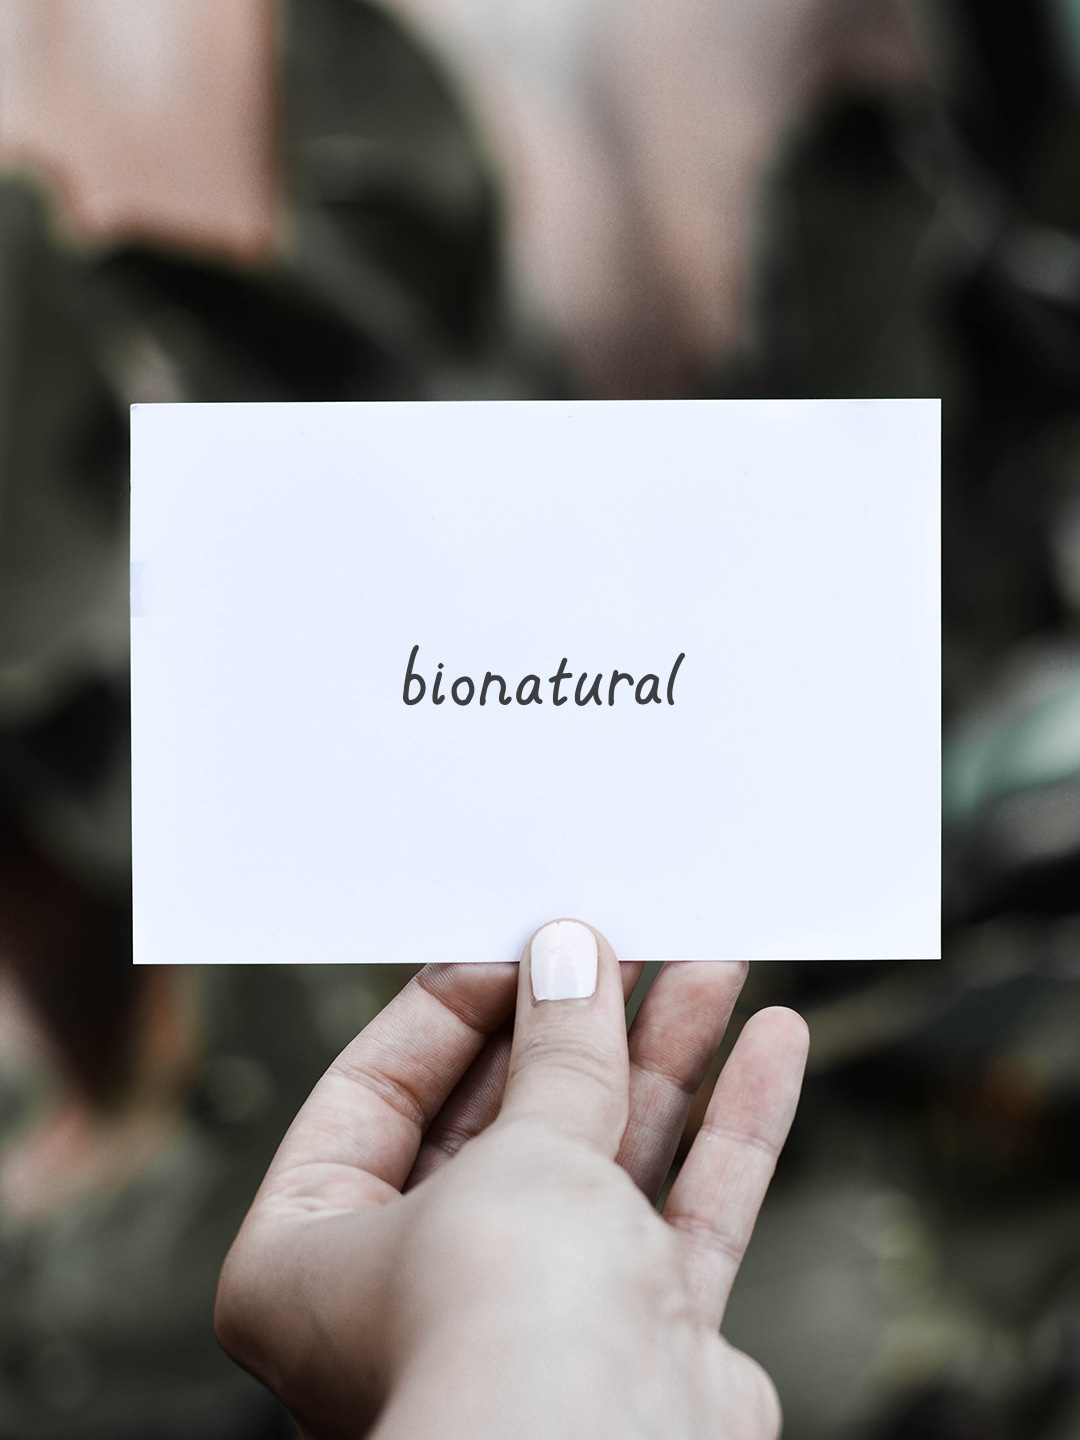 bionatural